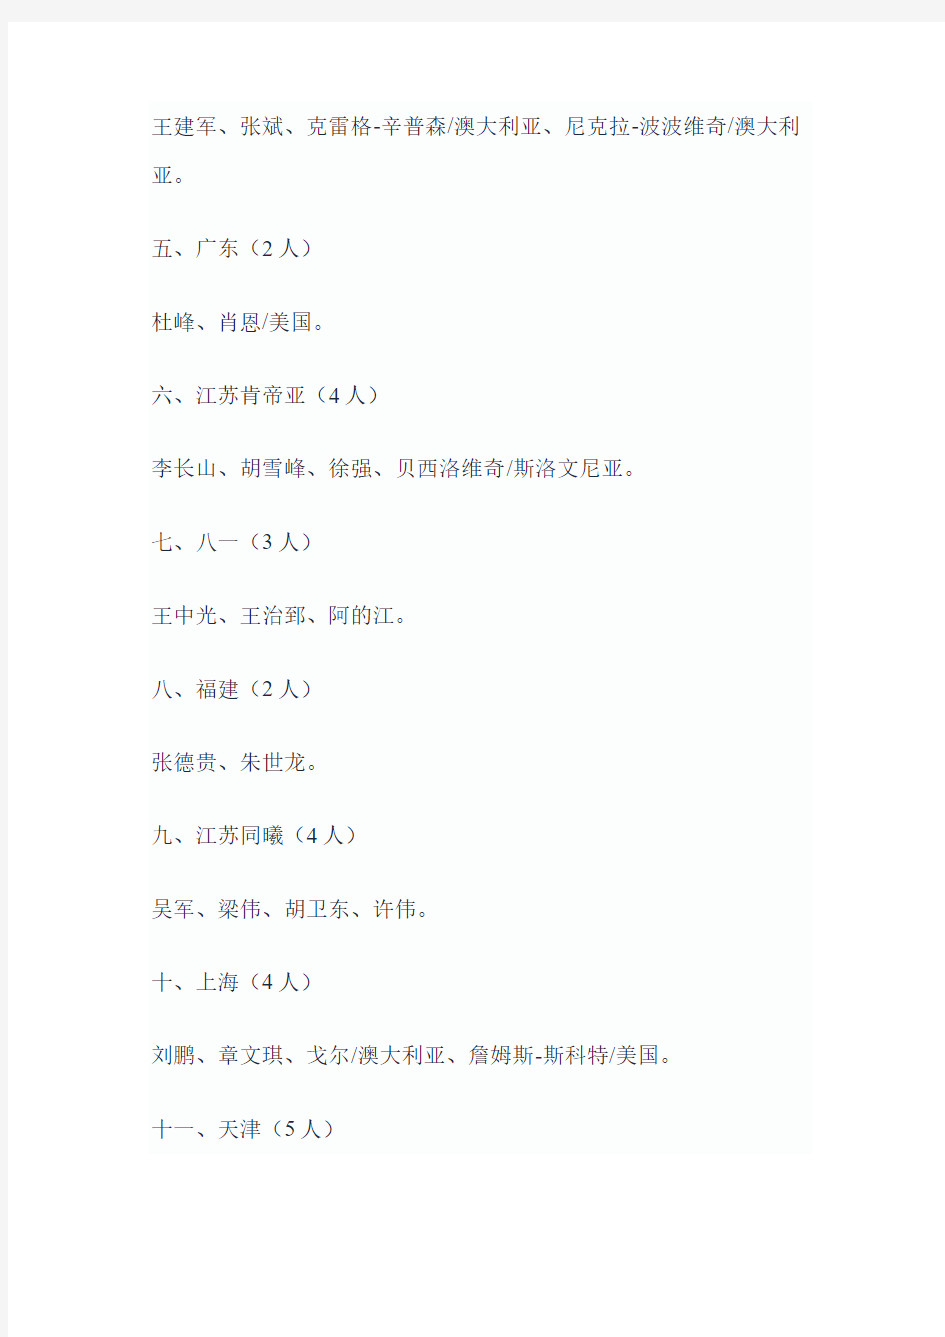 2016年中国篮协公示注册教练员名单